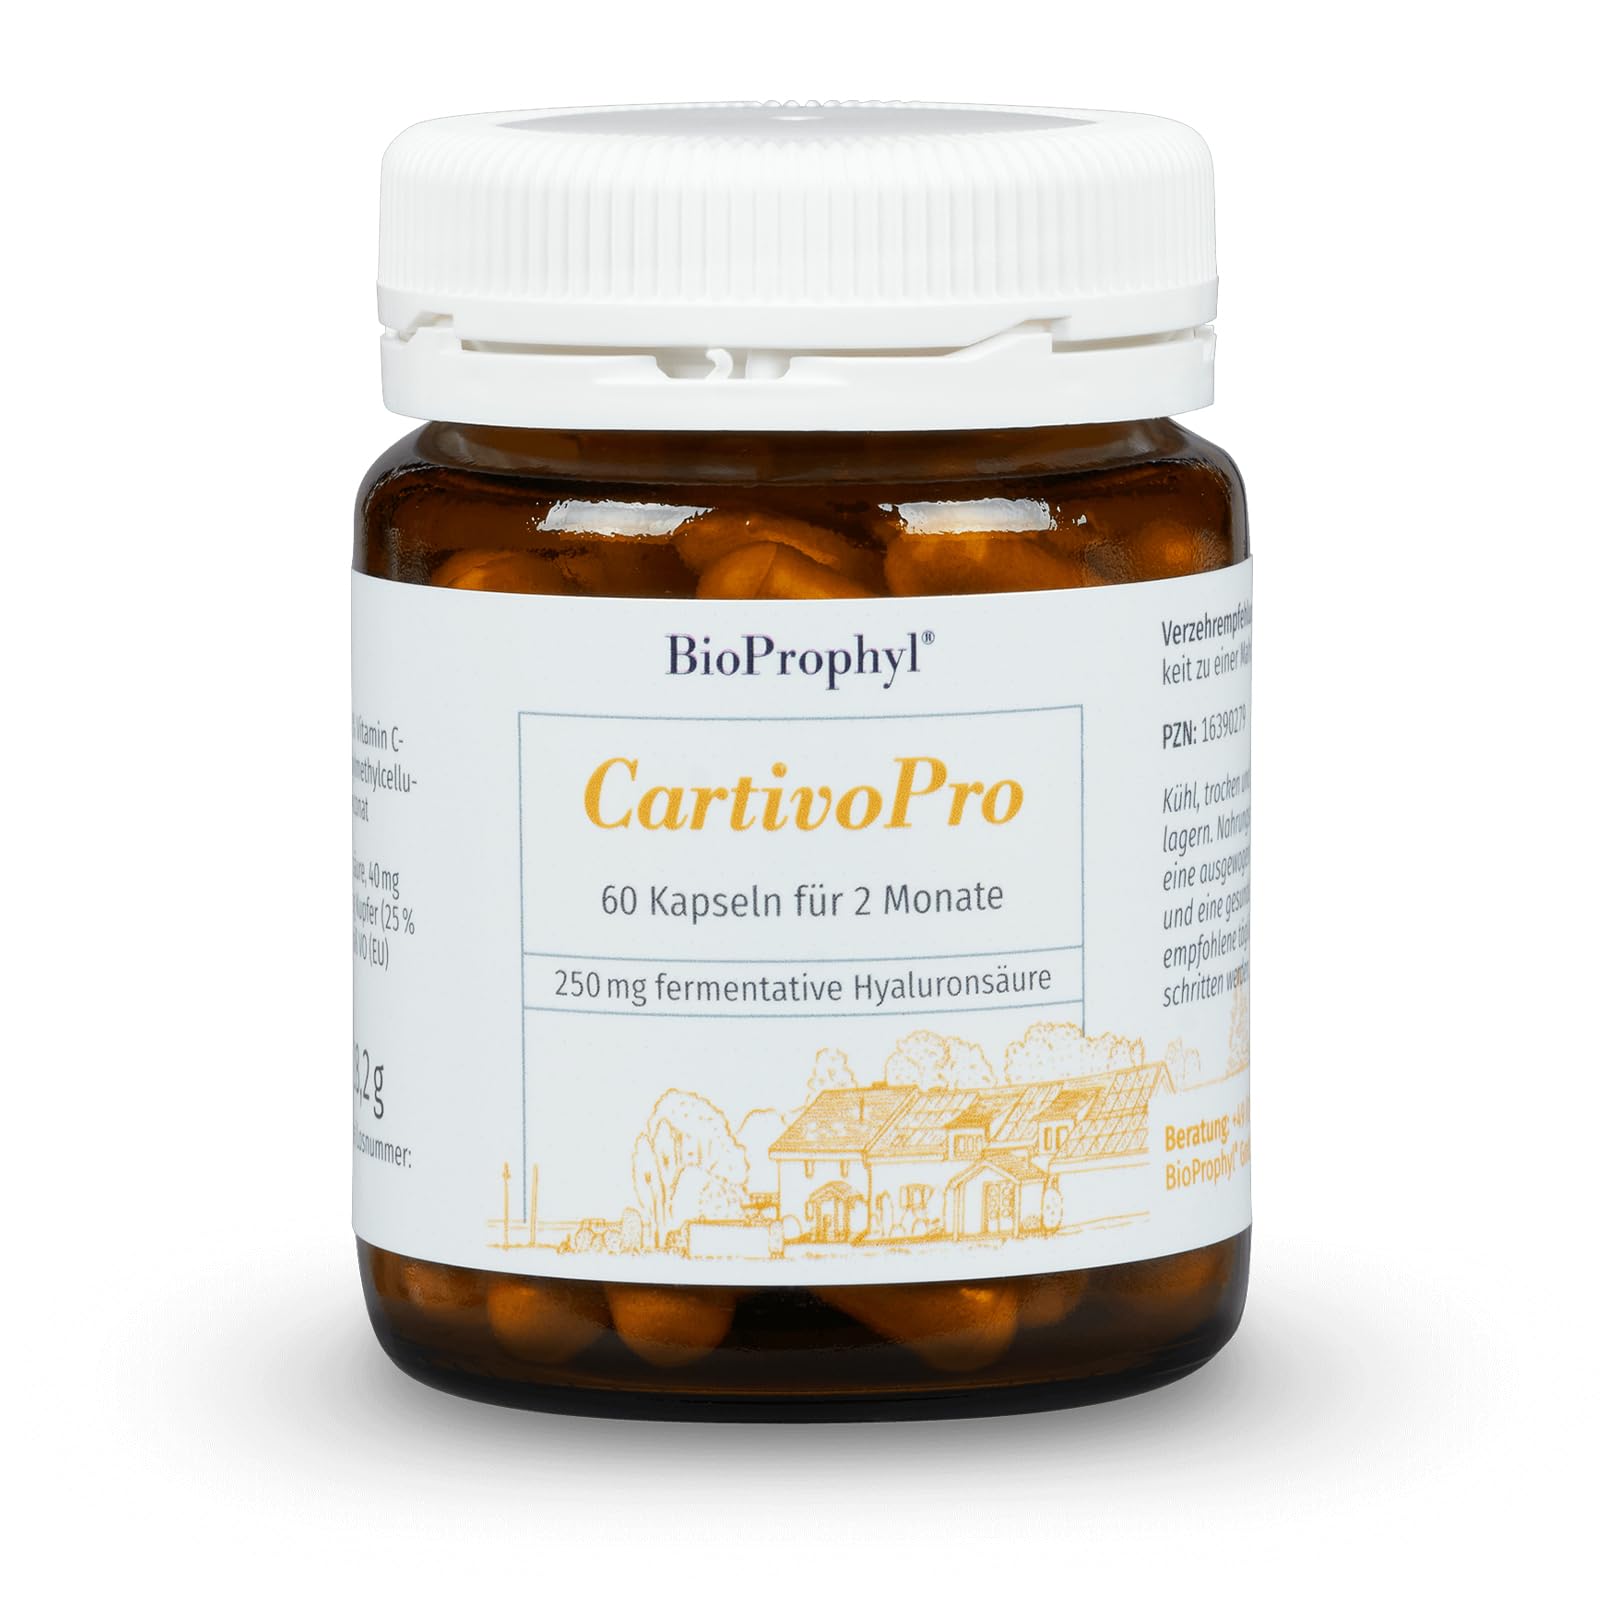 BioProphyl®CartivoPro 250 mit 250 mg Hyaluronsäure, Kupfer und Vitamin C für Knochen, Knorpel, Haut und Gelenke - 60 pflanzliche Kapseln für 2 Monate